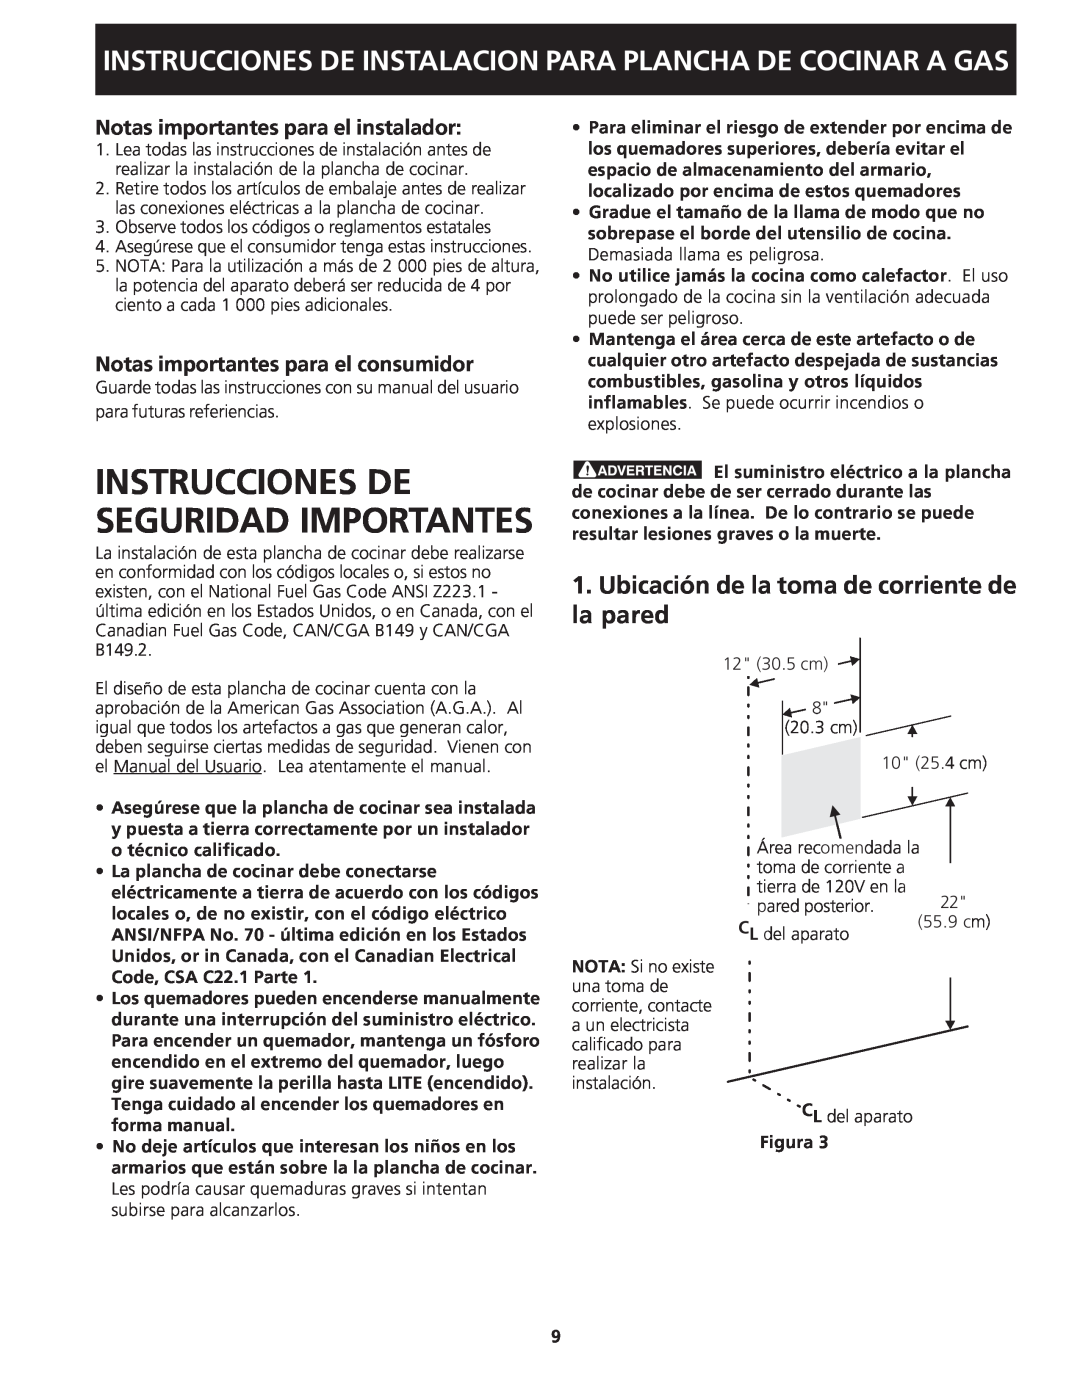 Frigidaire 318201451 dimensions Instrucciones De Seguridad Importantes, Ubicación de la toma de corriente de la pared 